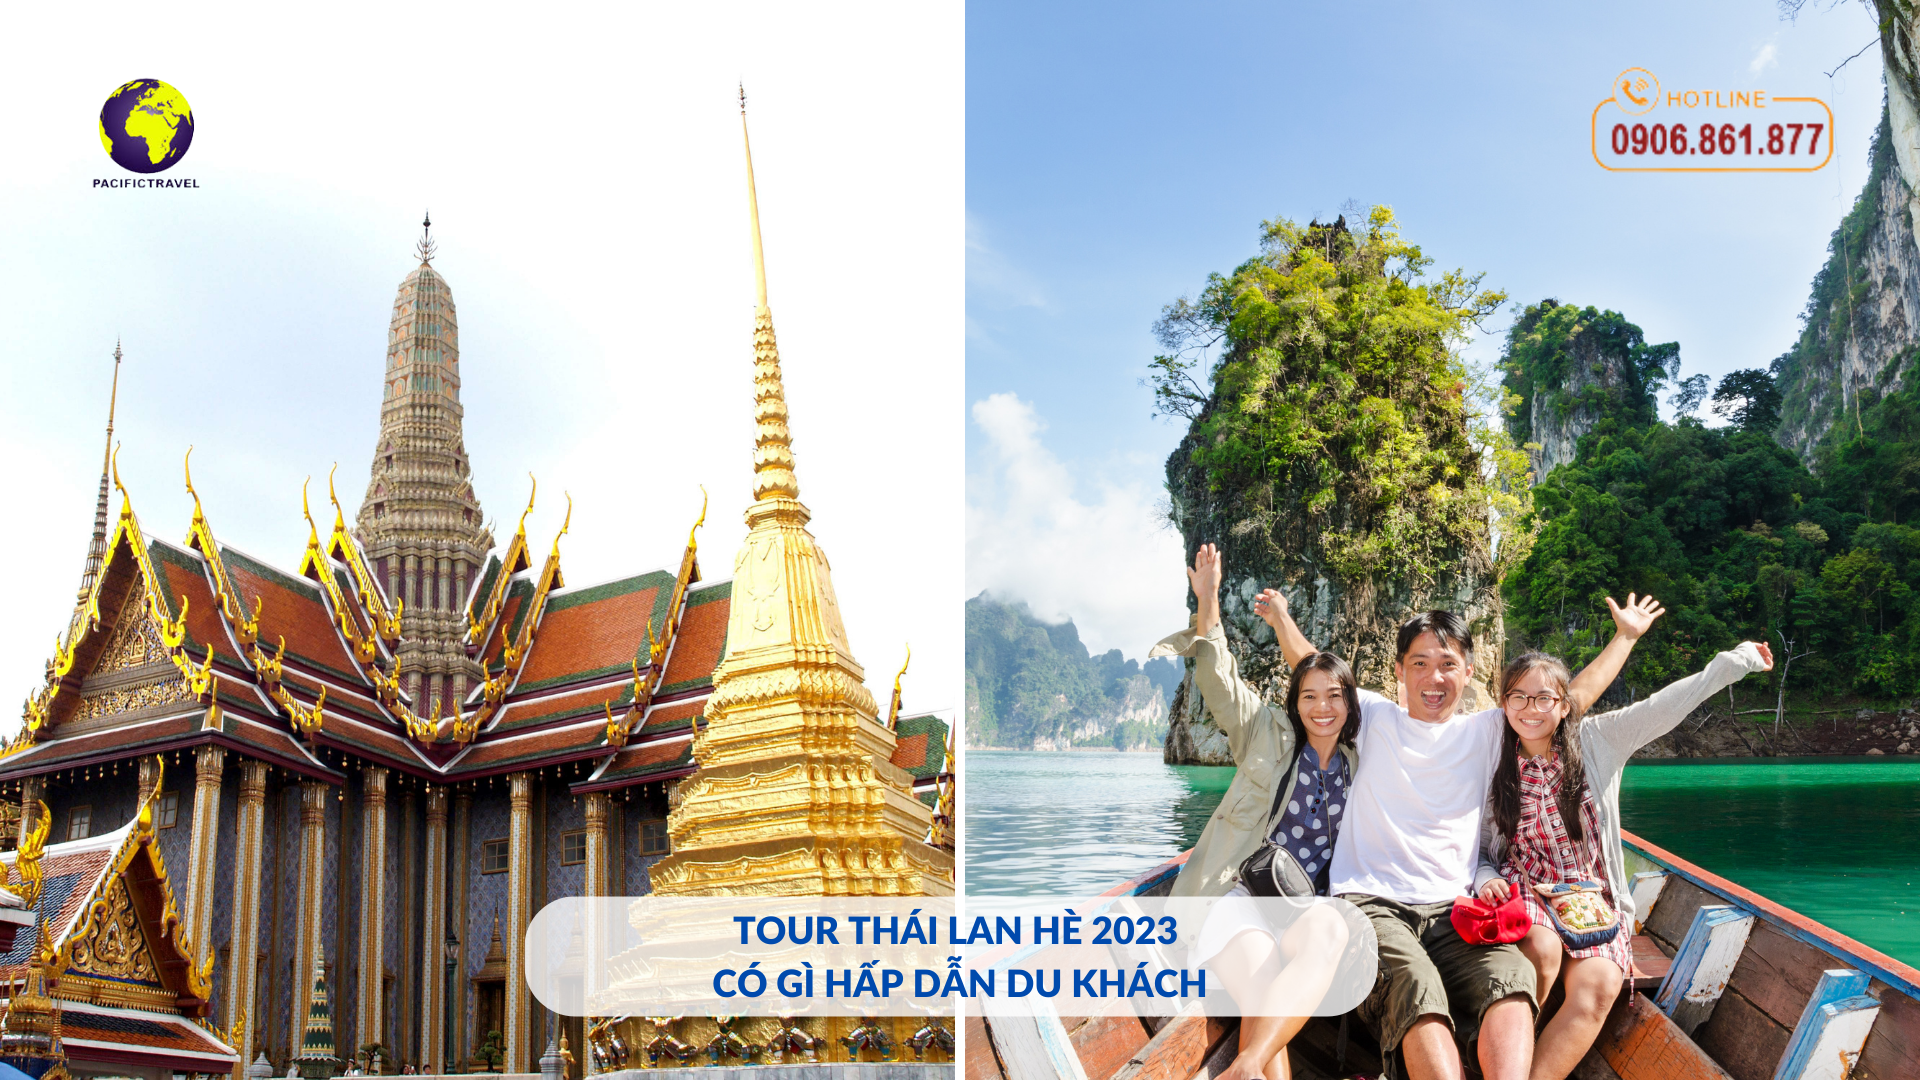 Tour Thái Lan mùa hè 2023 Pacific Travel